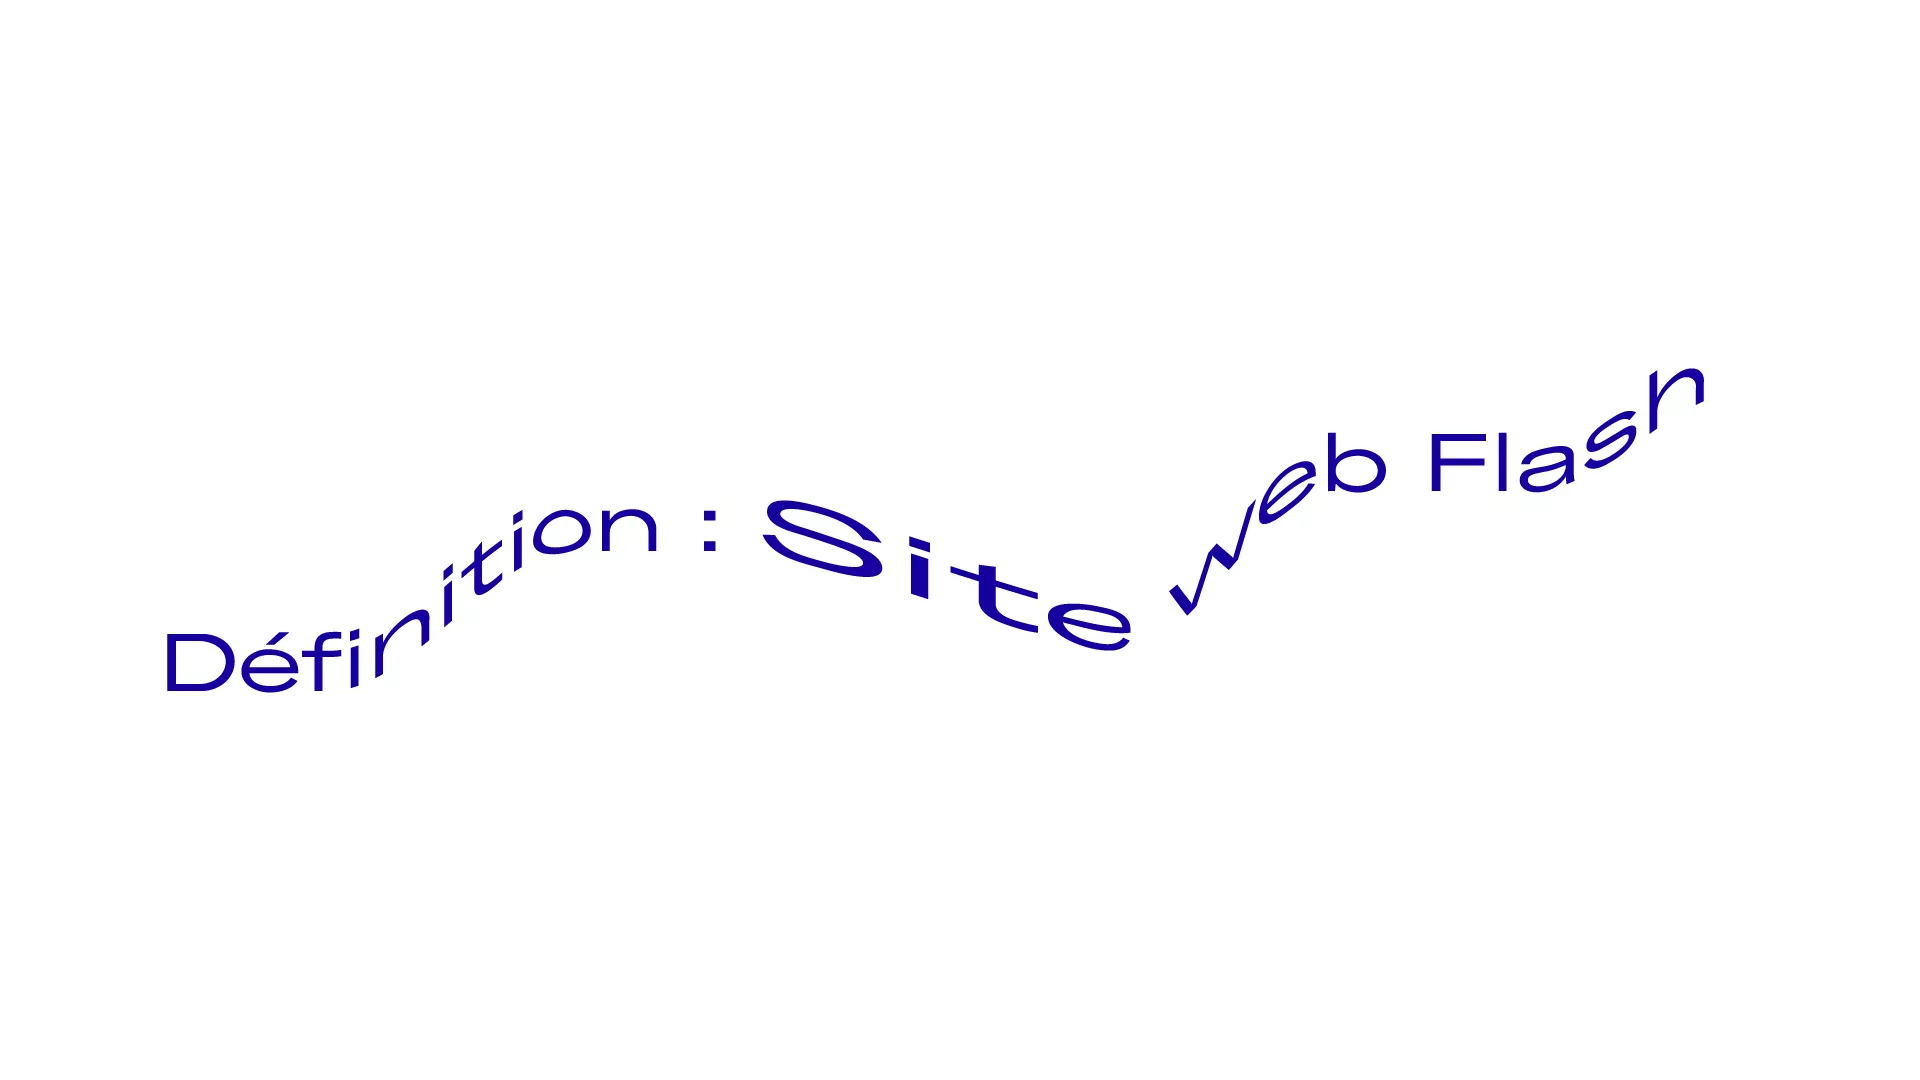 Définition : site web Flash